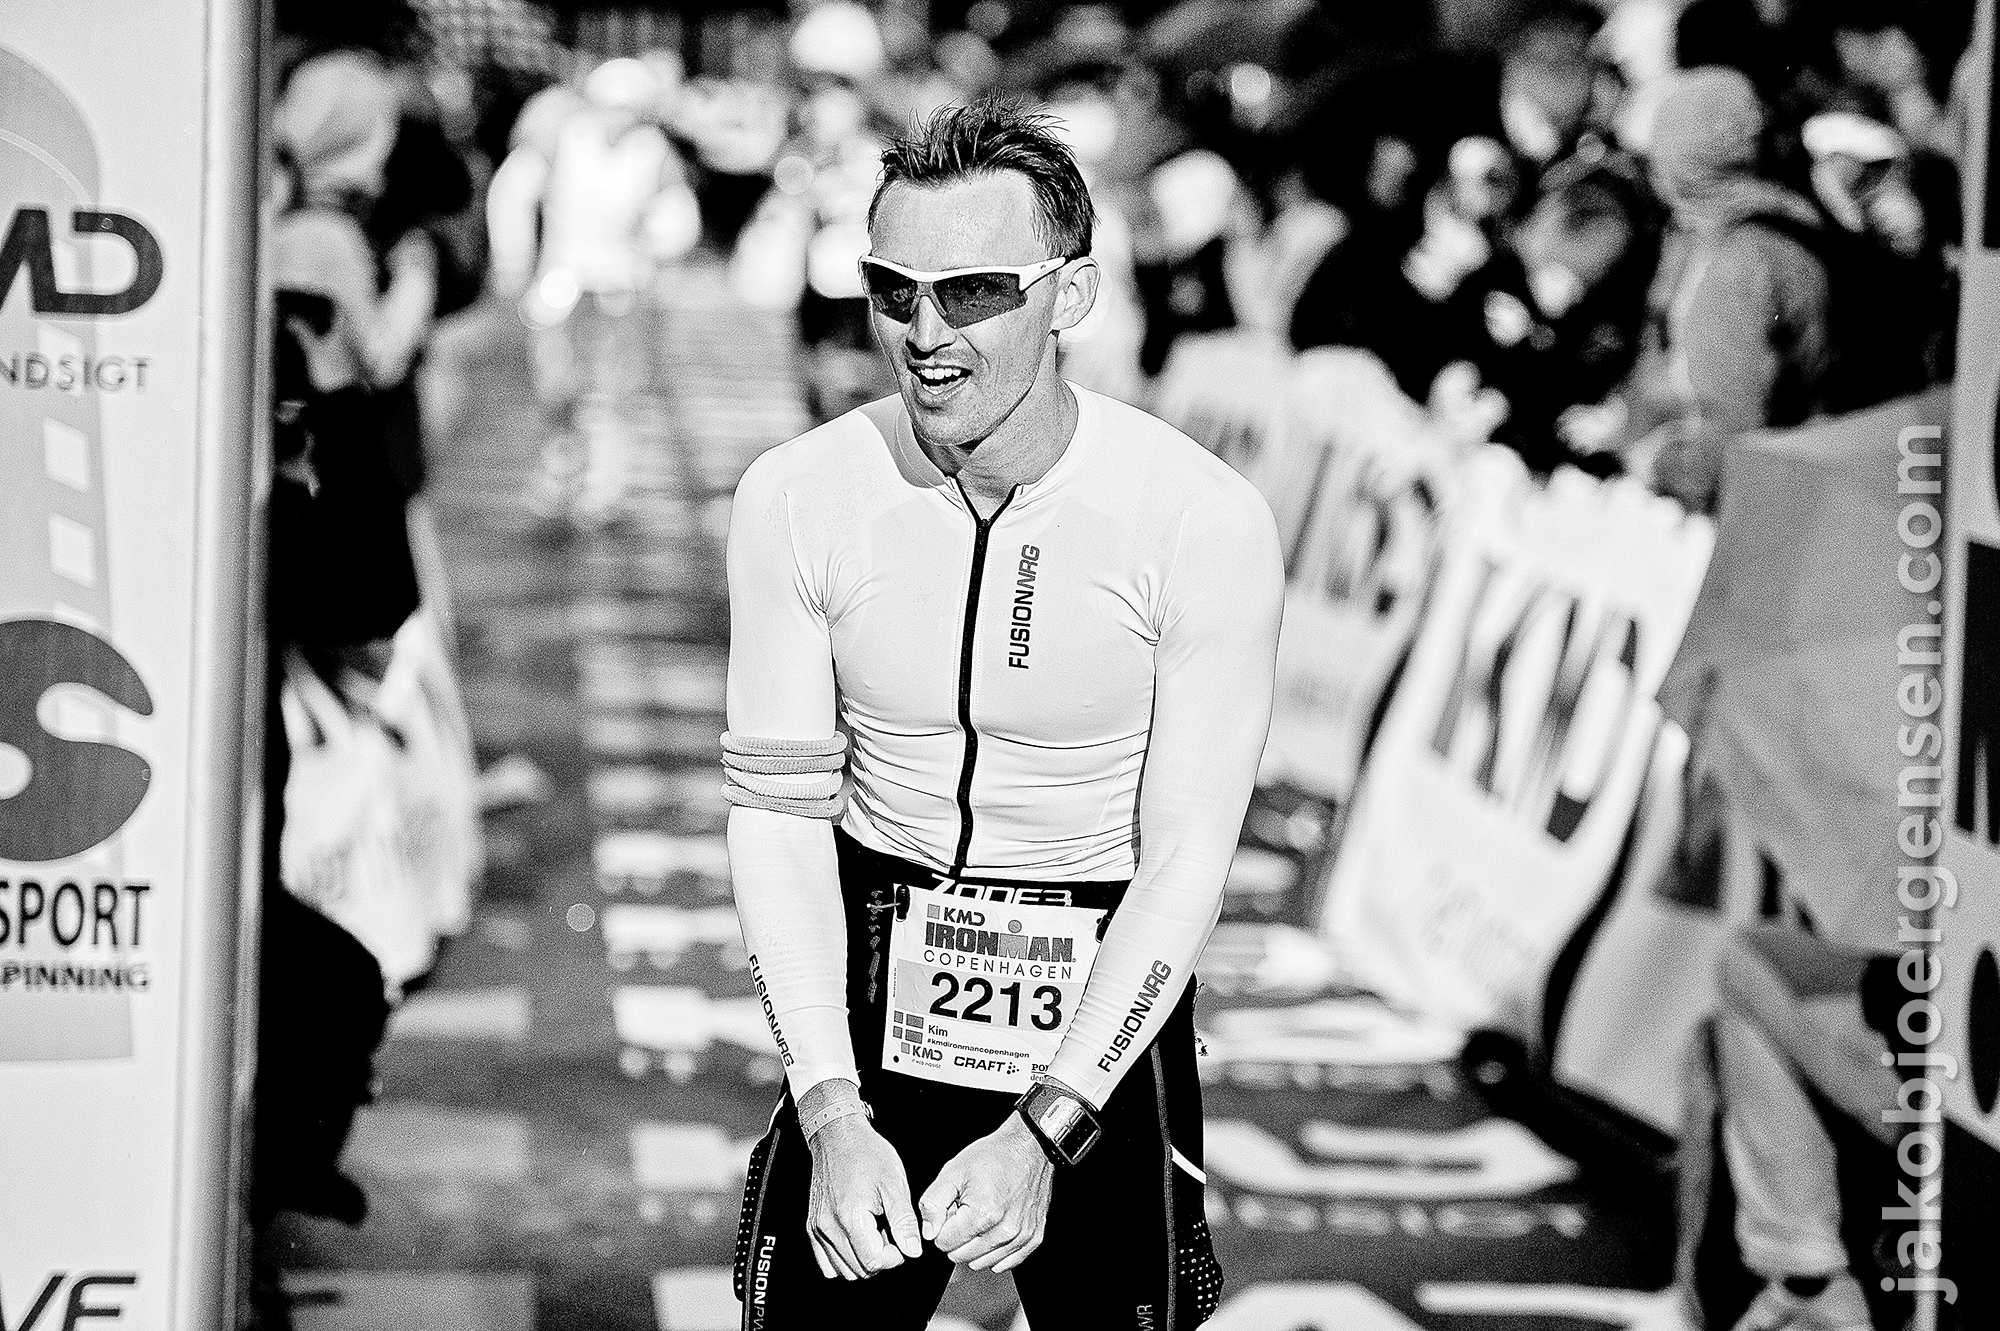 24-08-14_KMD Ironman Copenhagen 2014_0041.JPG